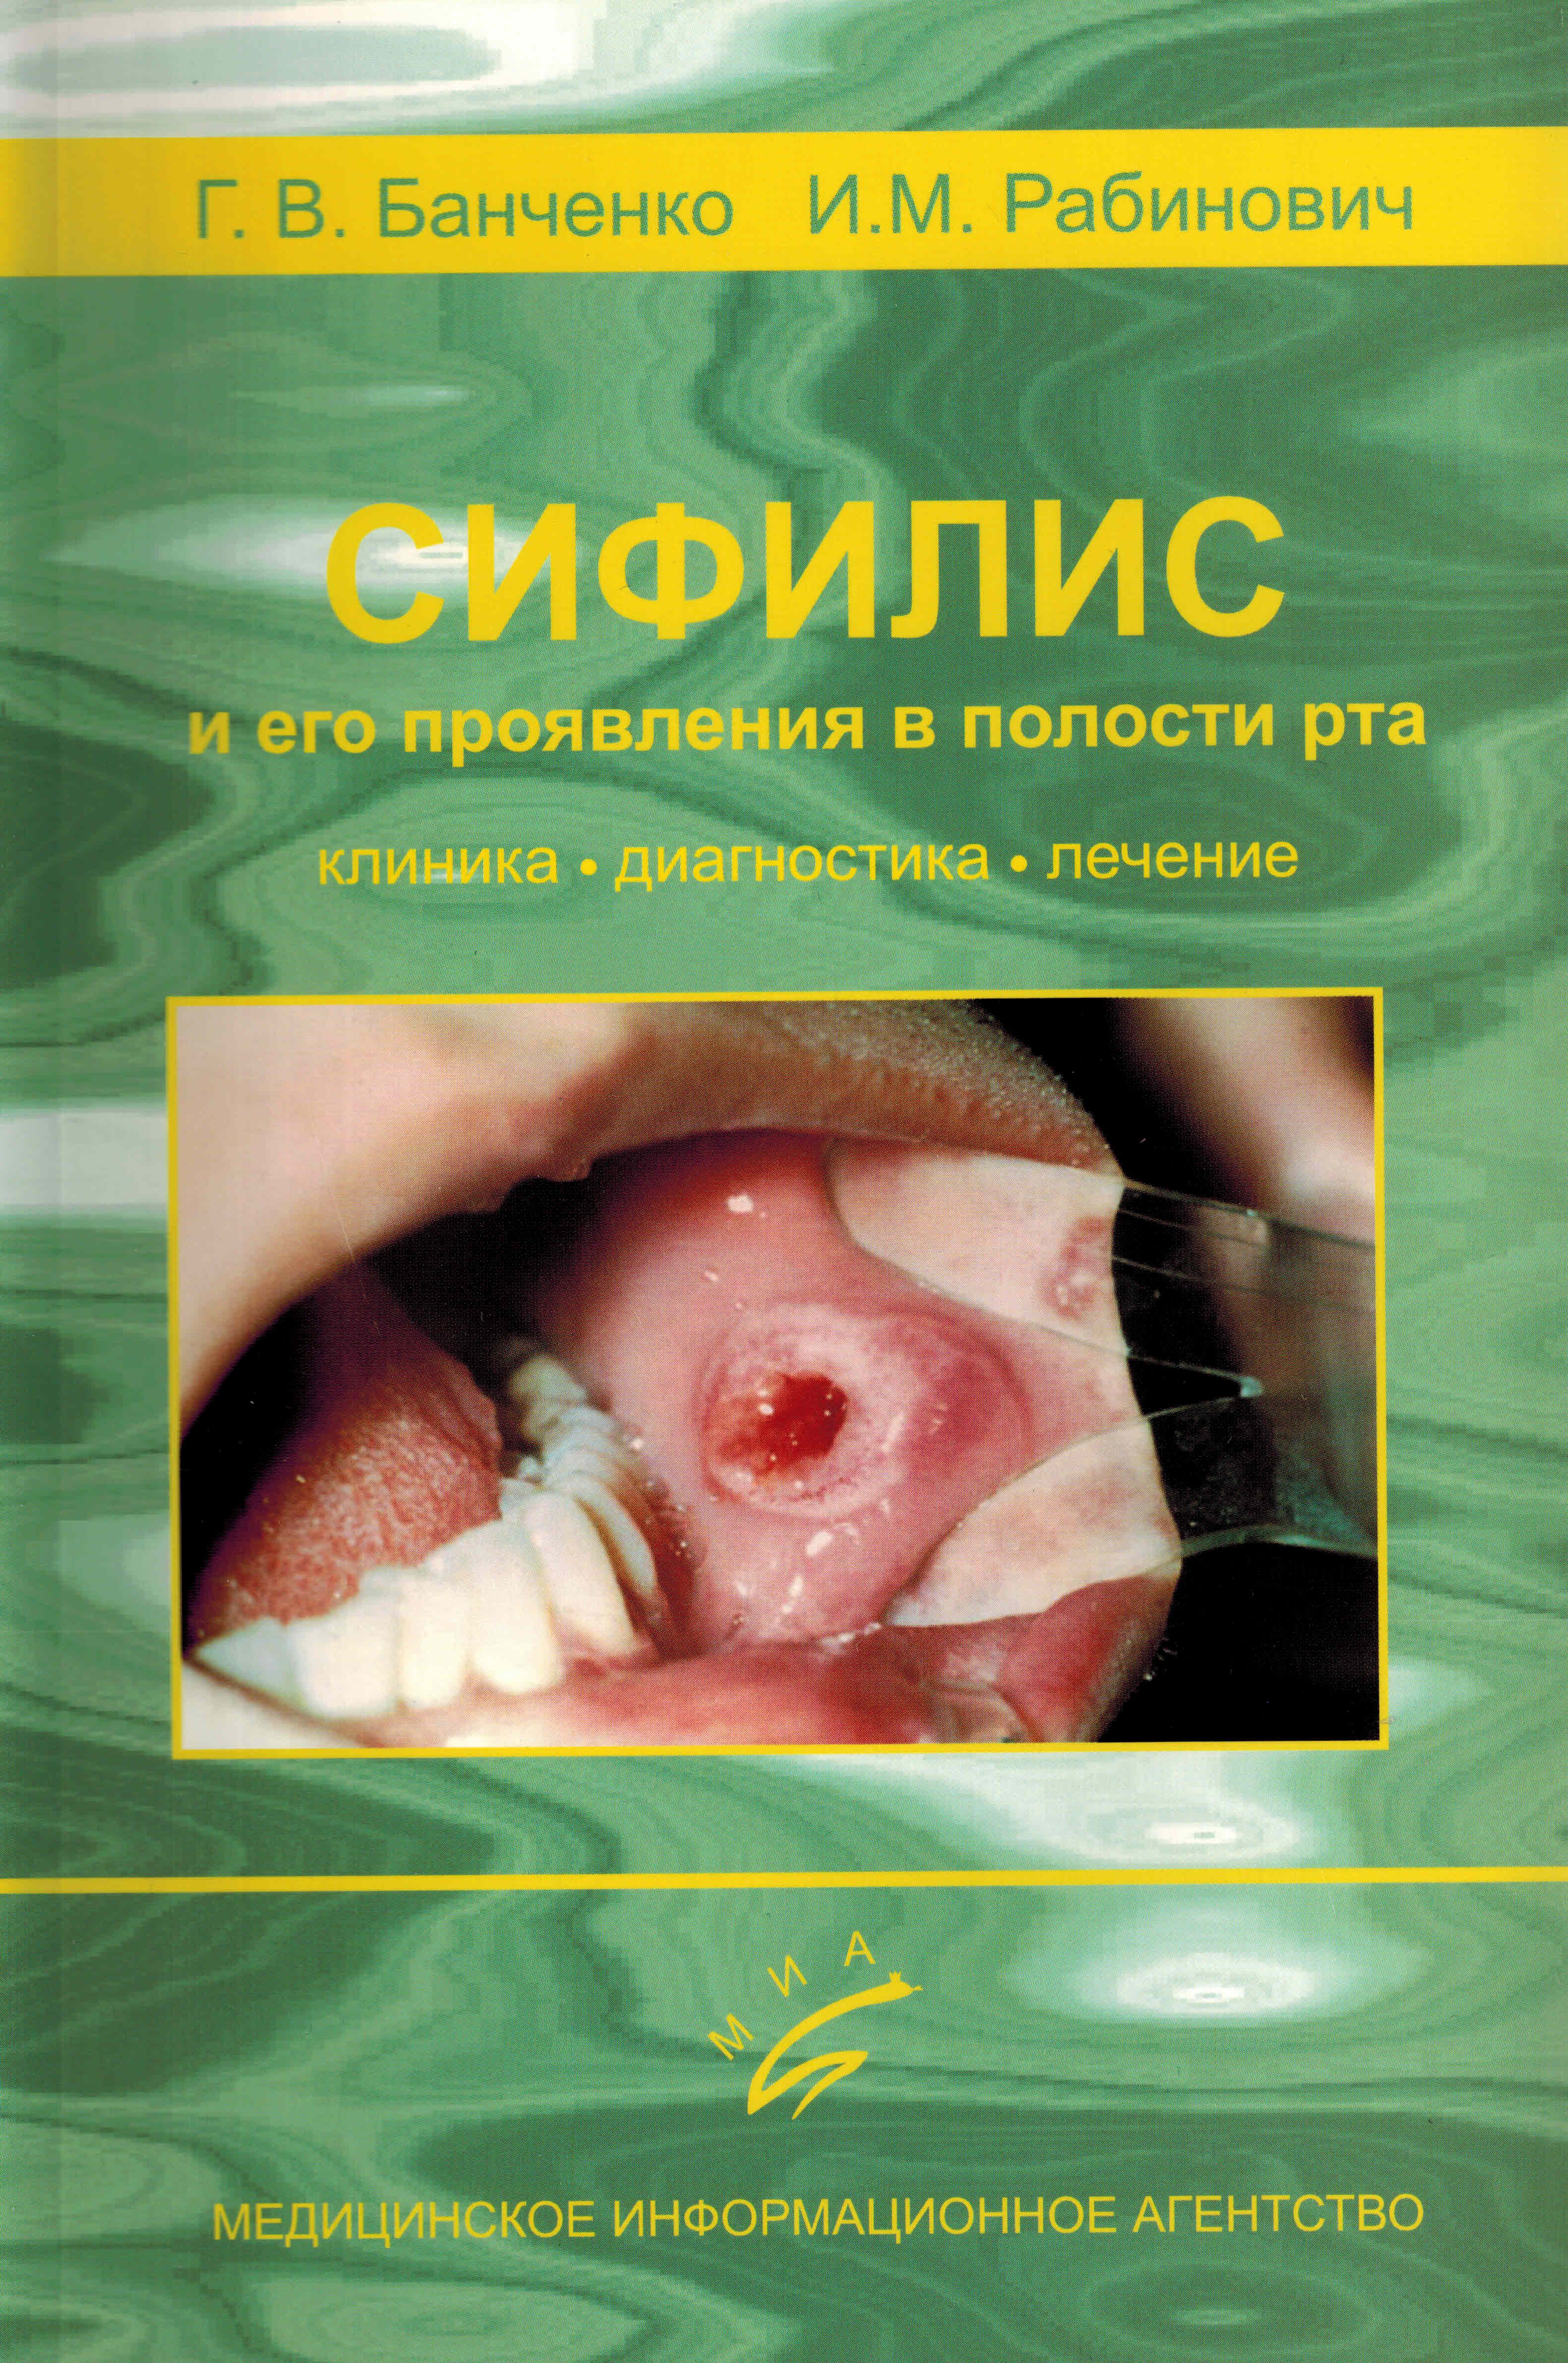 Сифилис во рту - фото инфекции в ротовой полости человека